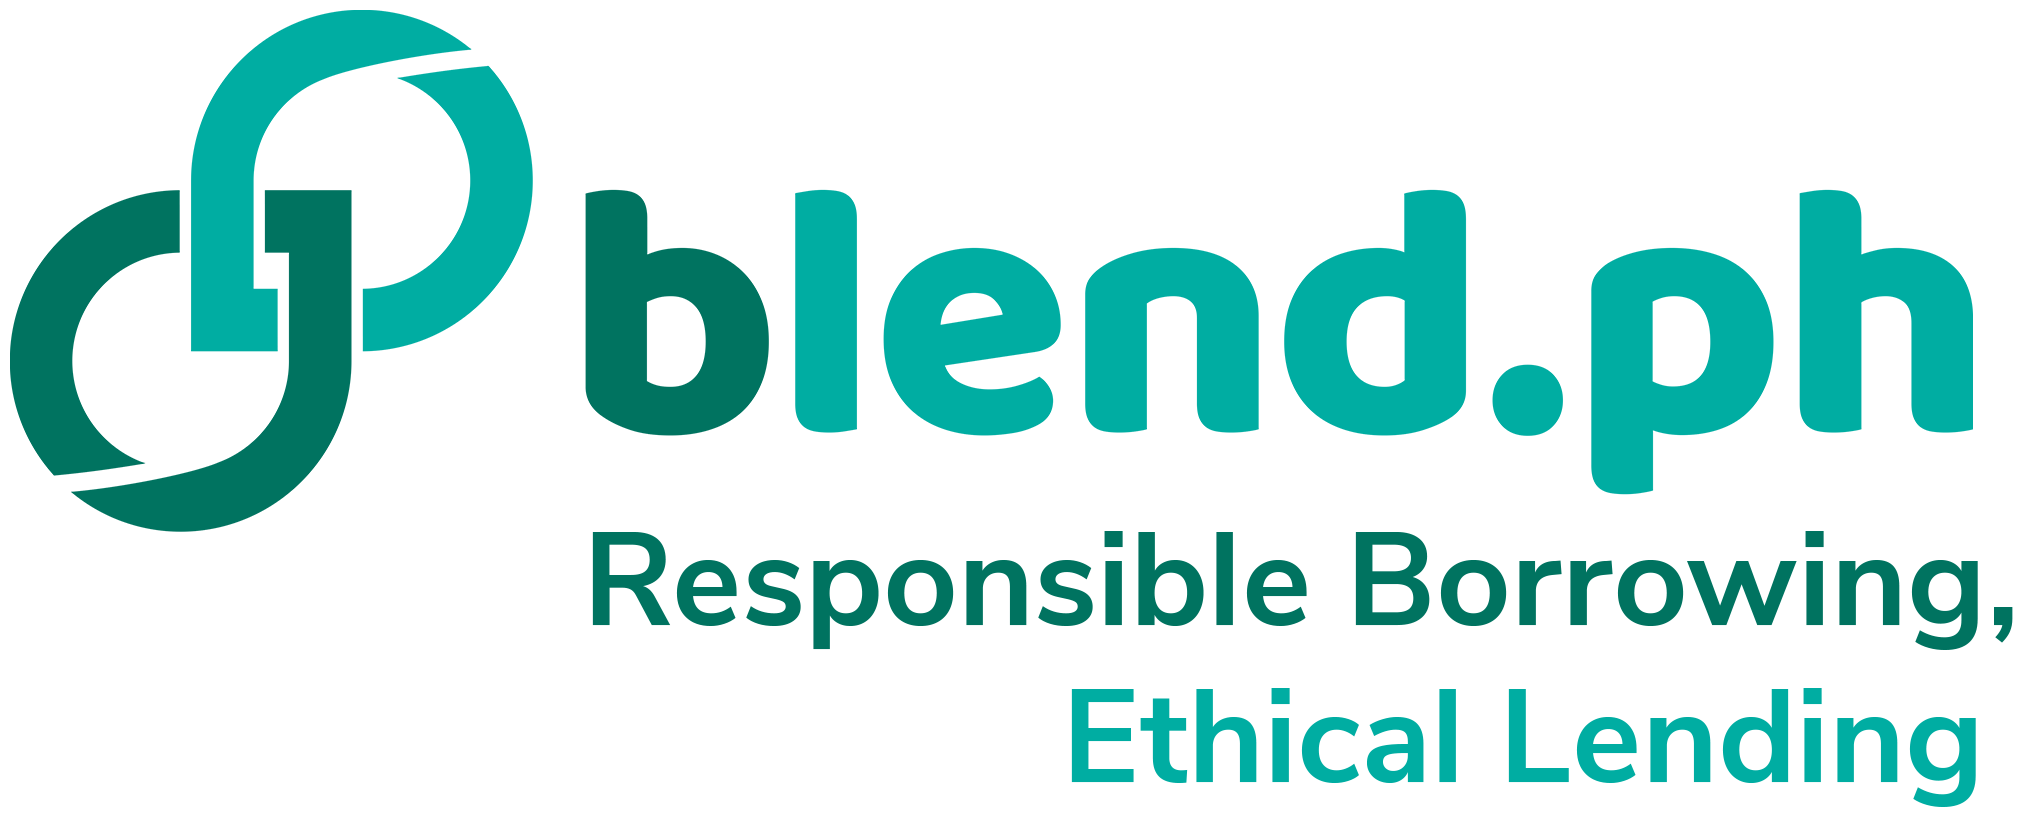 Blend.ph - Online Peer-to-Peer Funding Platform in the Philippines